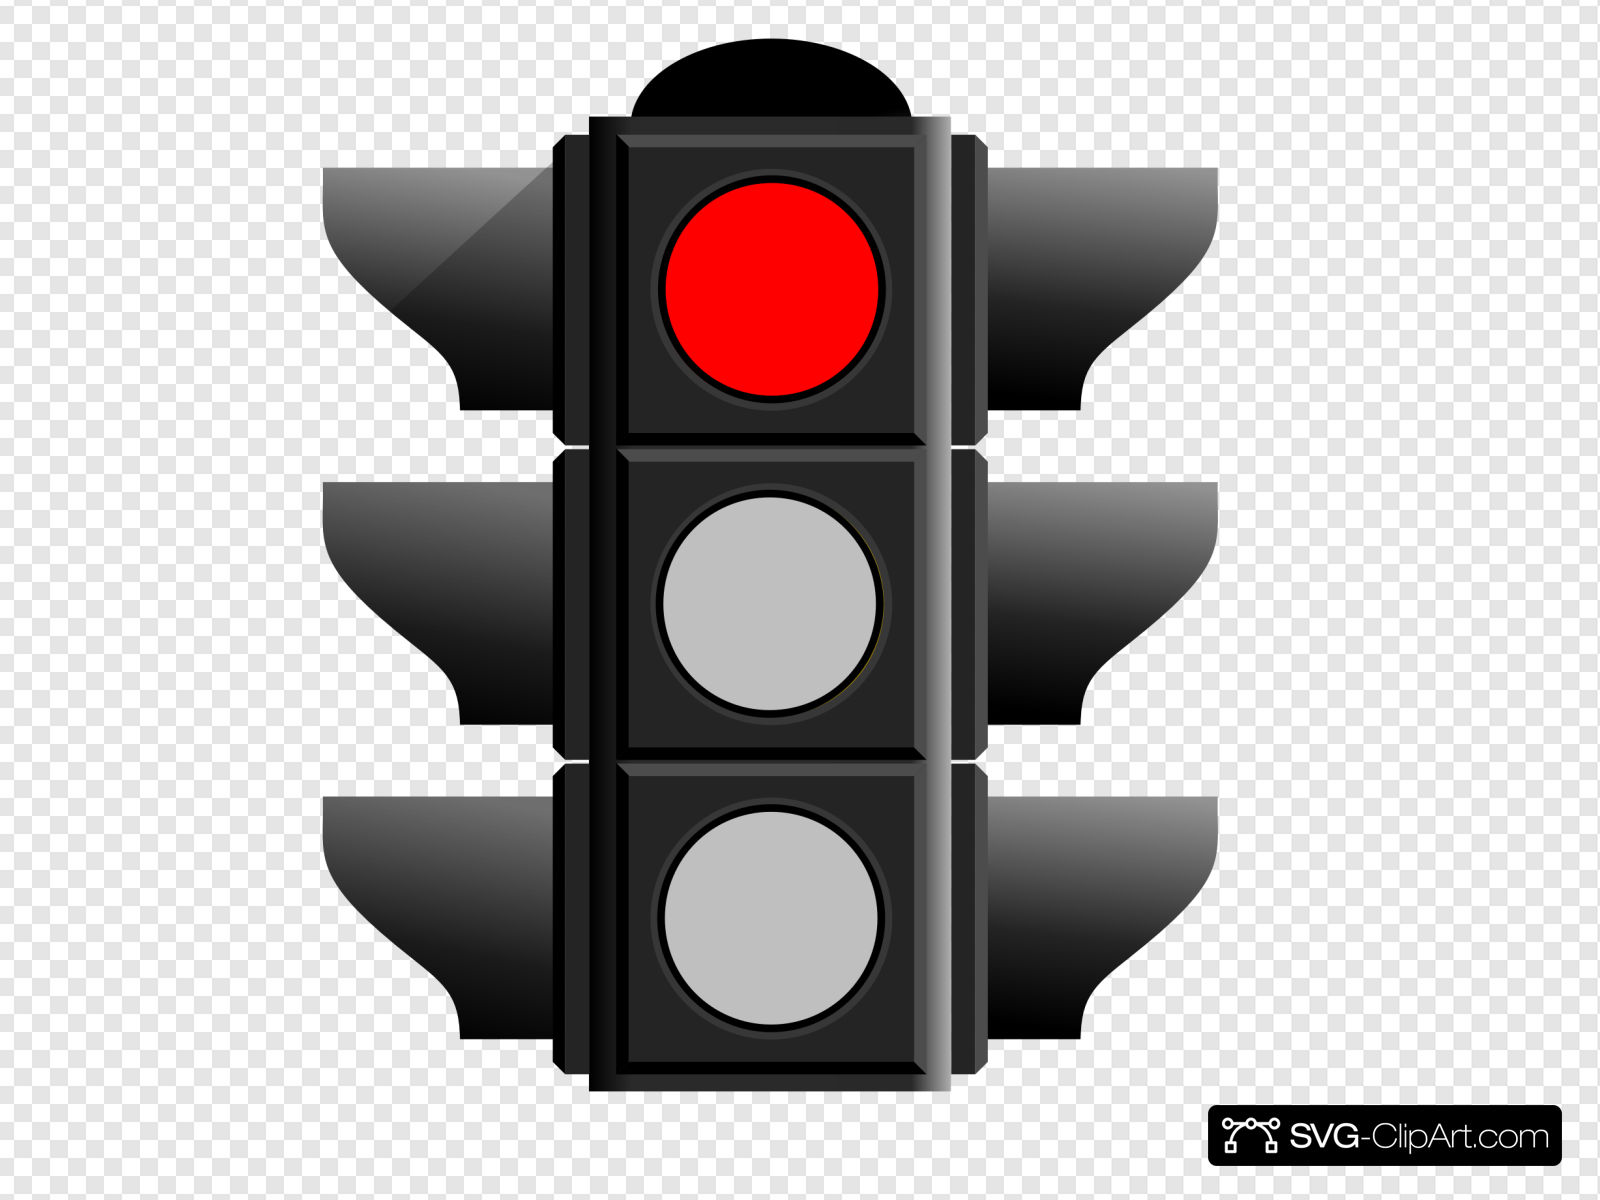 Traffic light red. Красный светофор. Красный знак светофора. Значок светофора. Светофор на белом фоне.